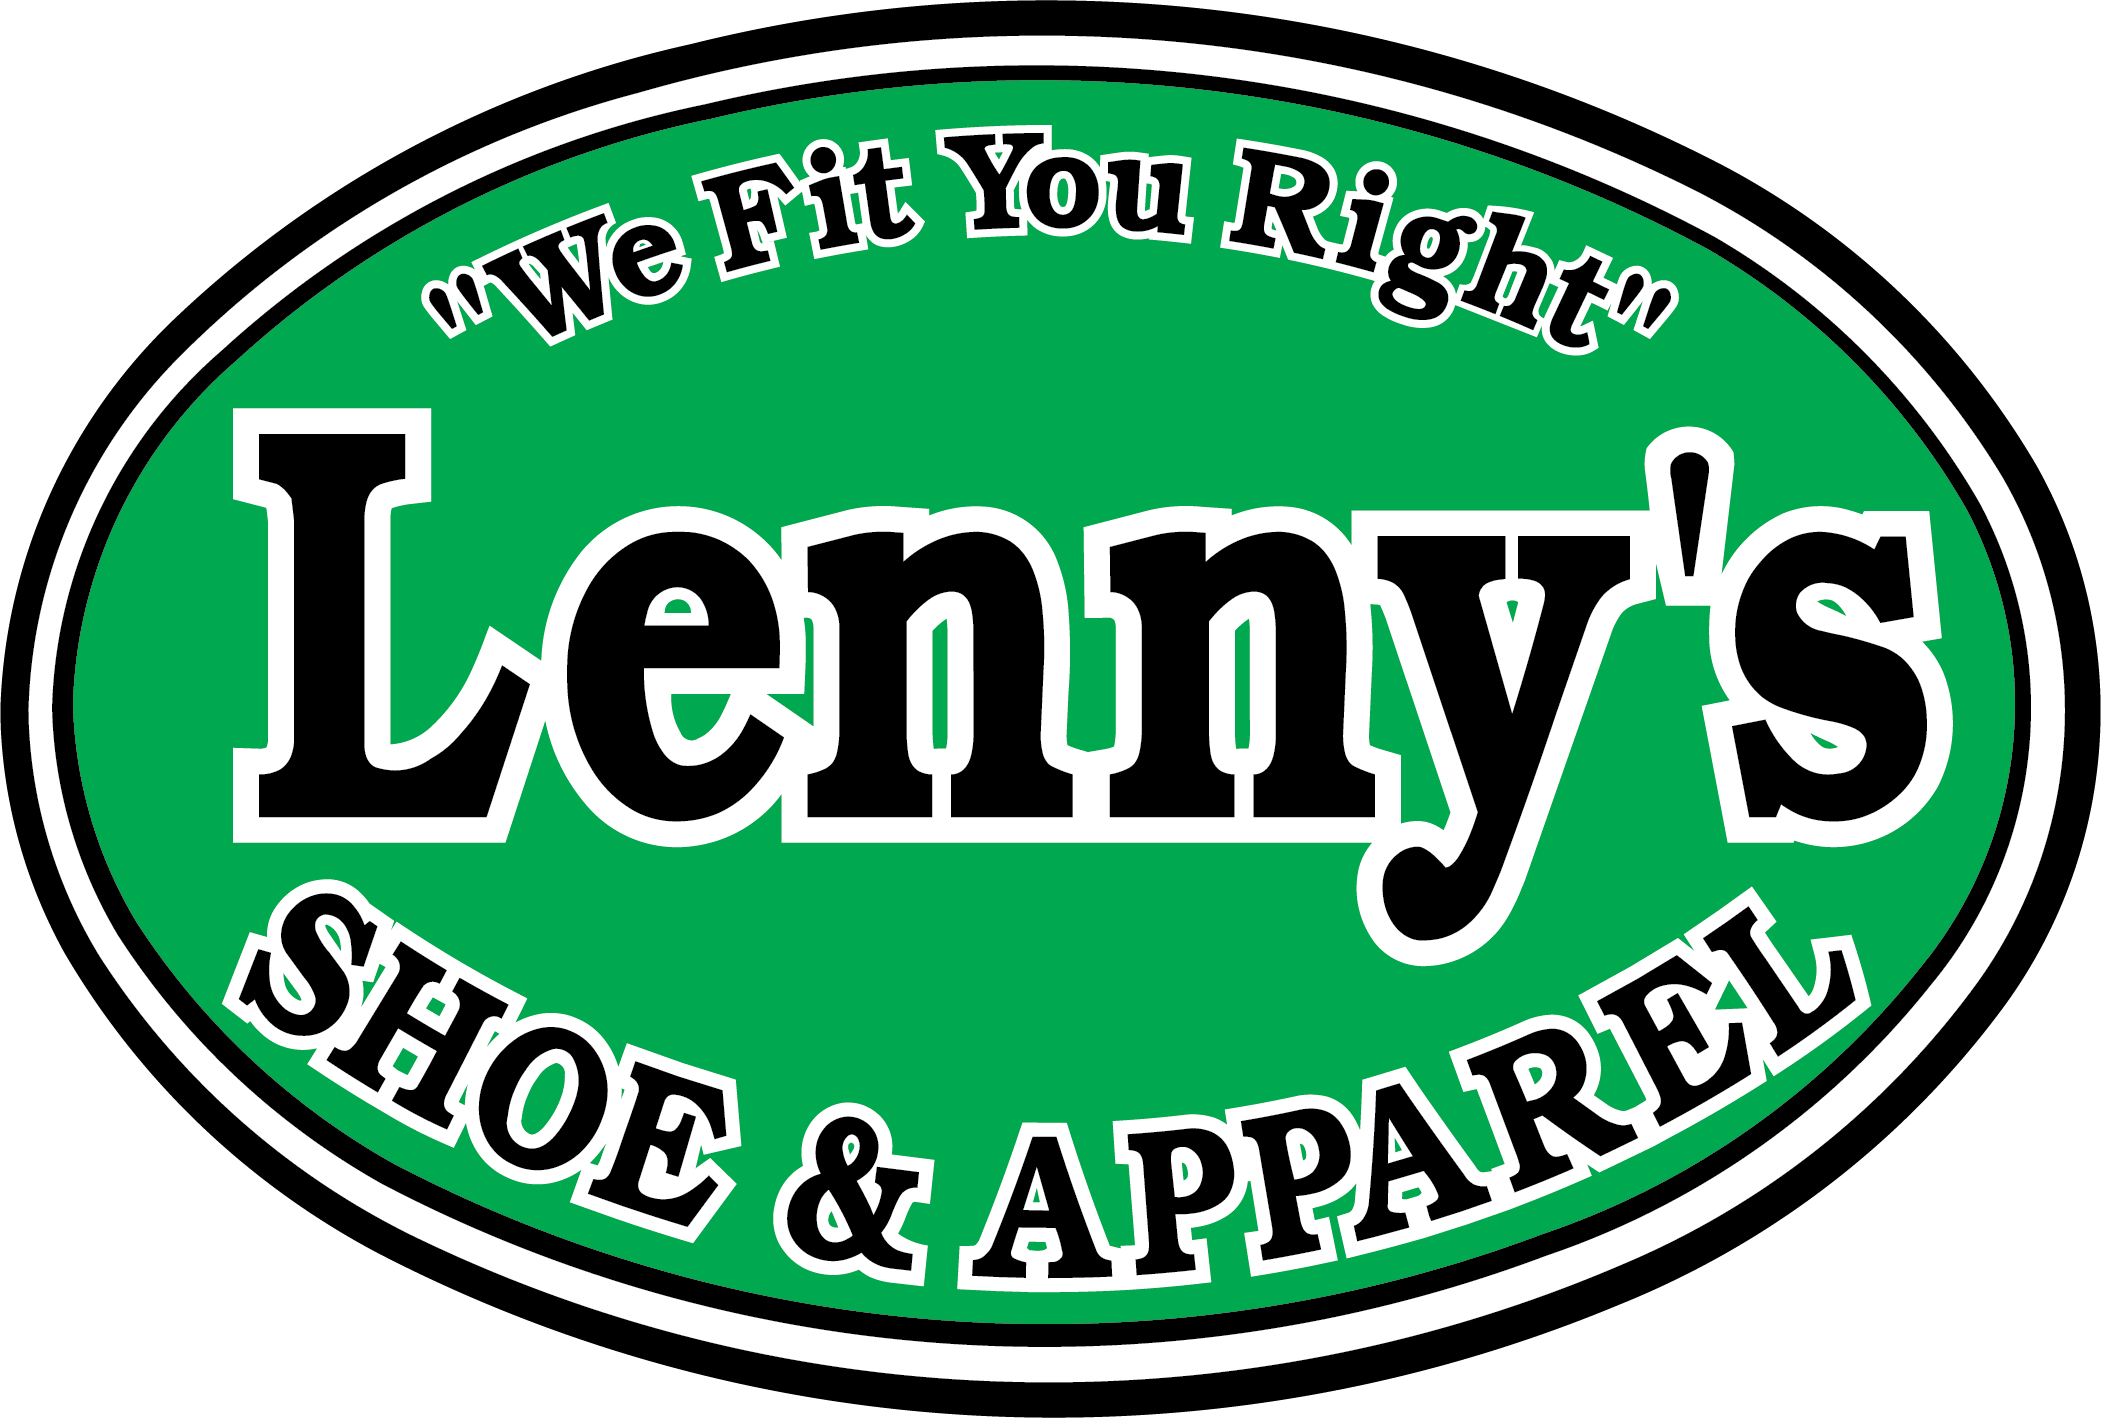 Lenny's Shoes